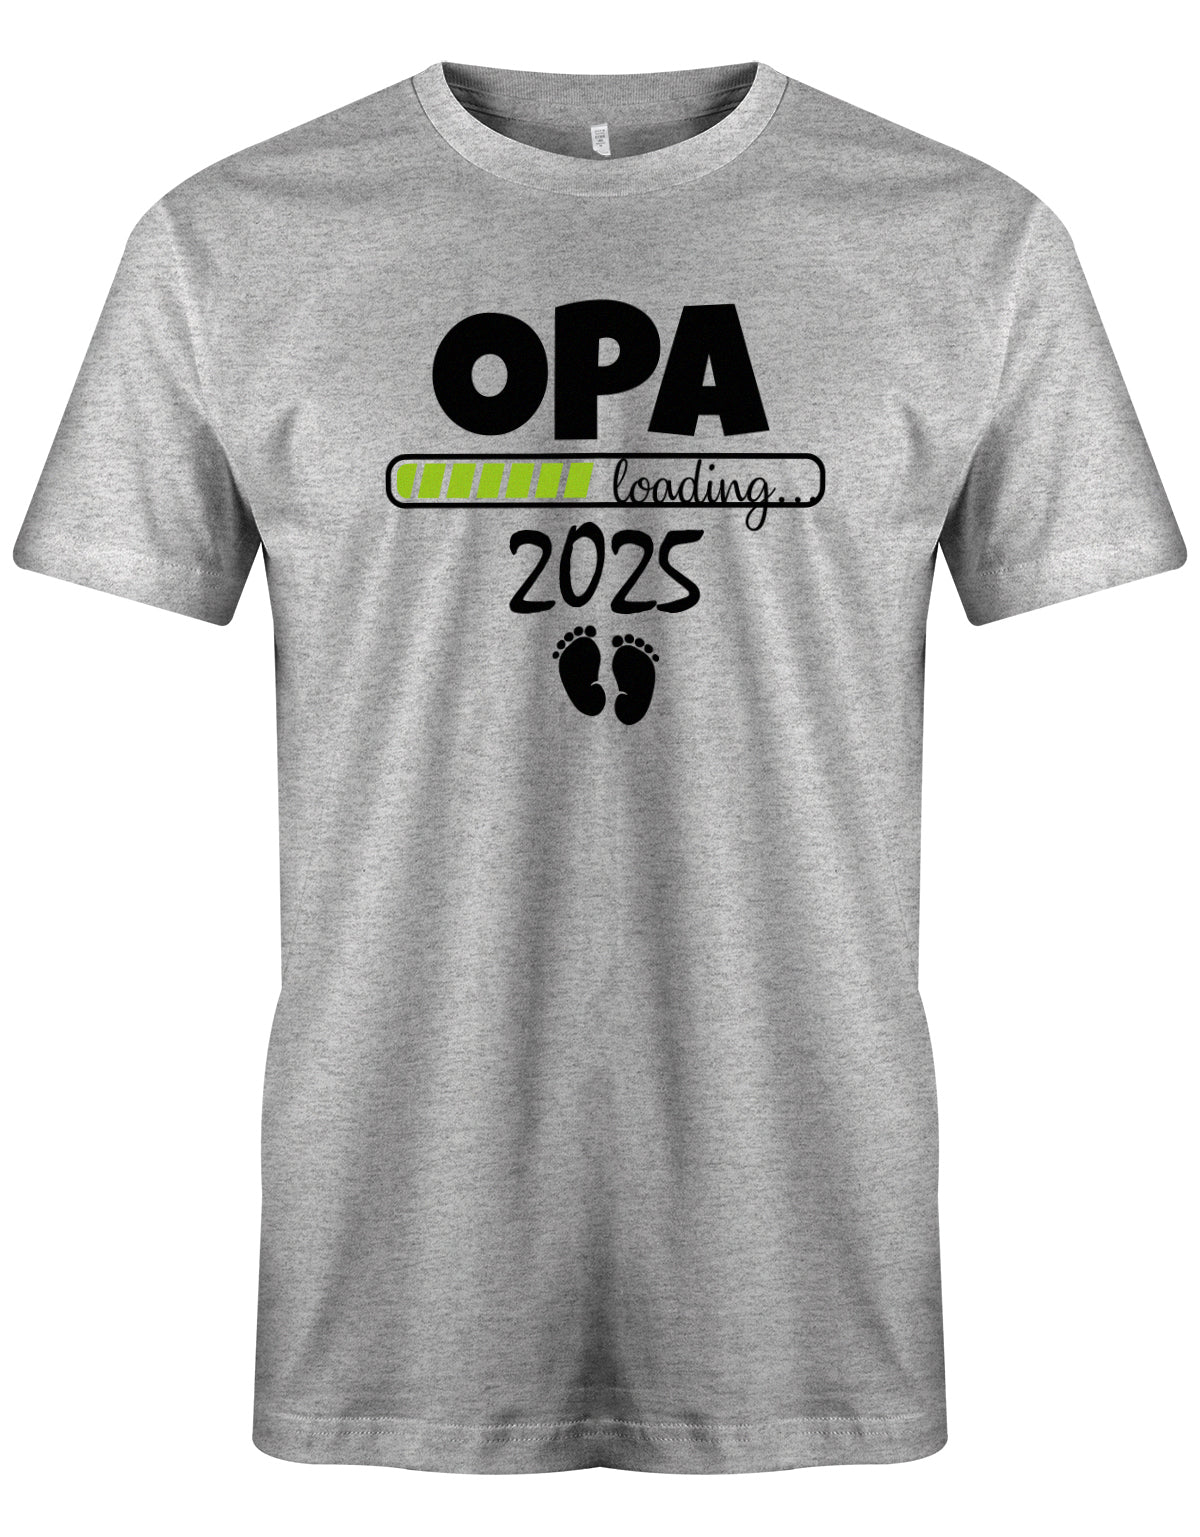 Opa T-Shirt Spruch für werdenden Opa - Opa Loading 2025 Balken lädt. Fußabdrücke Baby. Grau